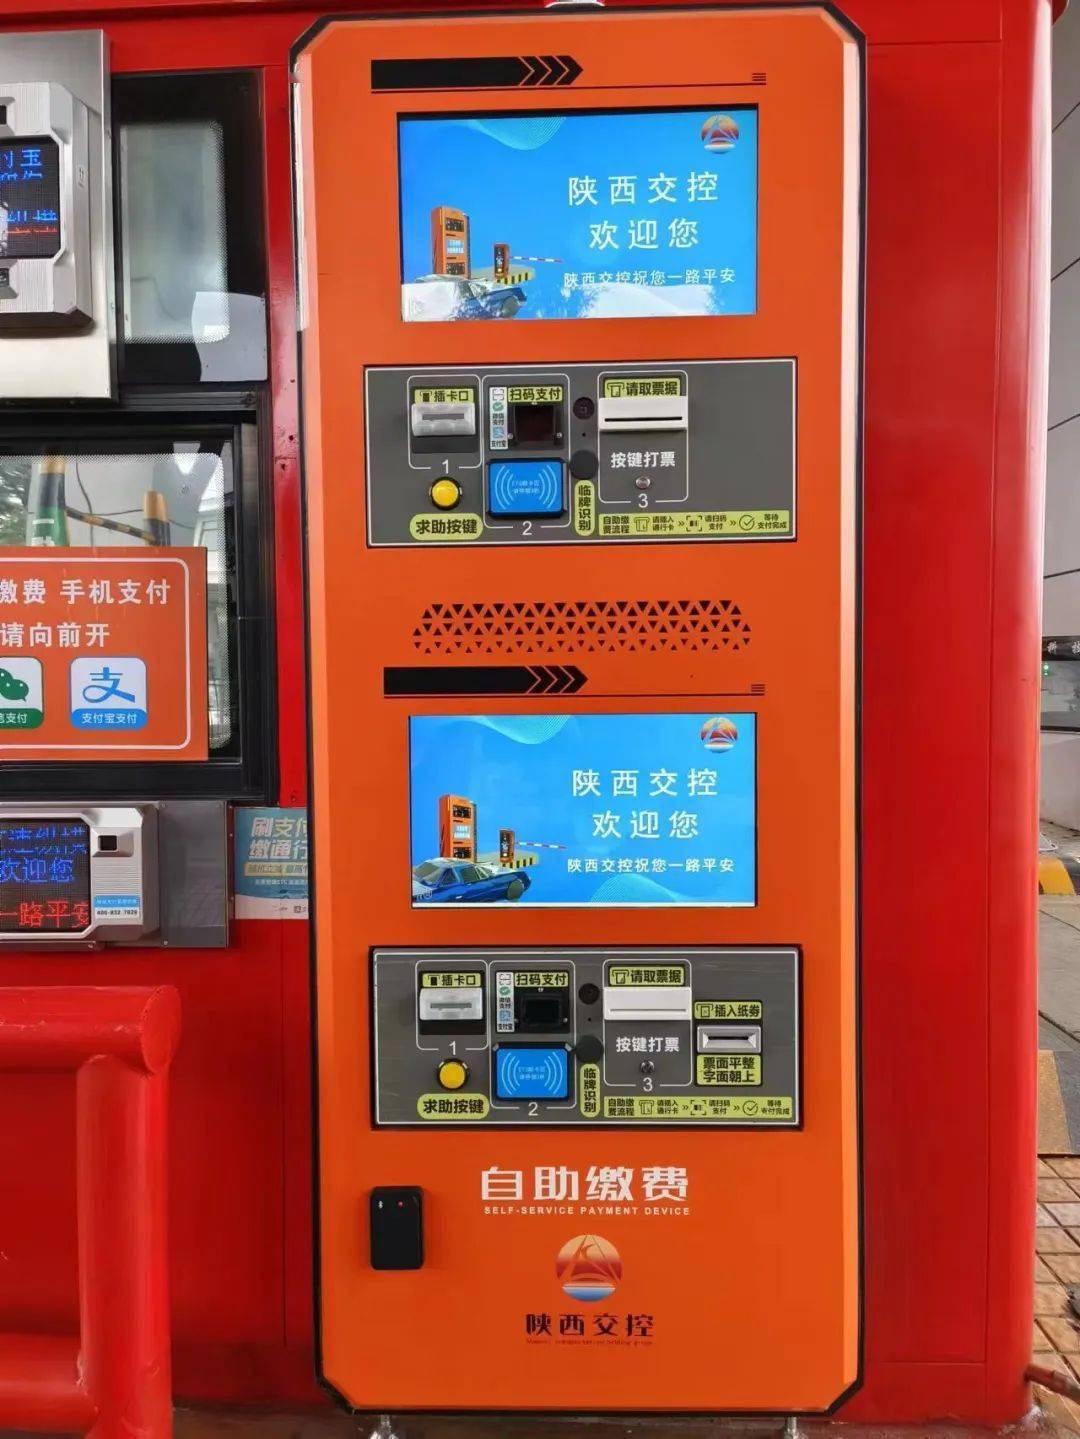 在安康东站收费站入口处,一台台橙红色的机器矗立在车道收费亭内,其